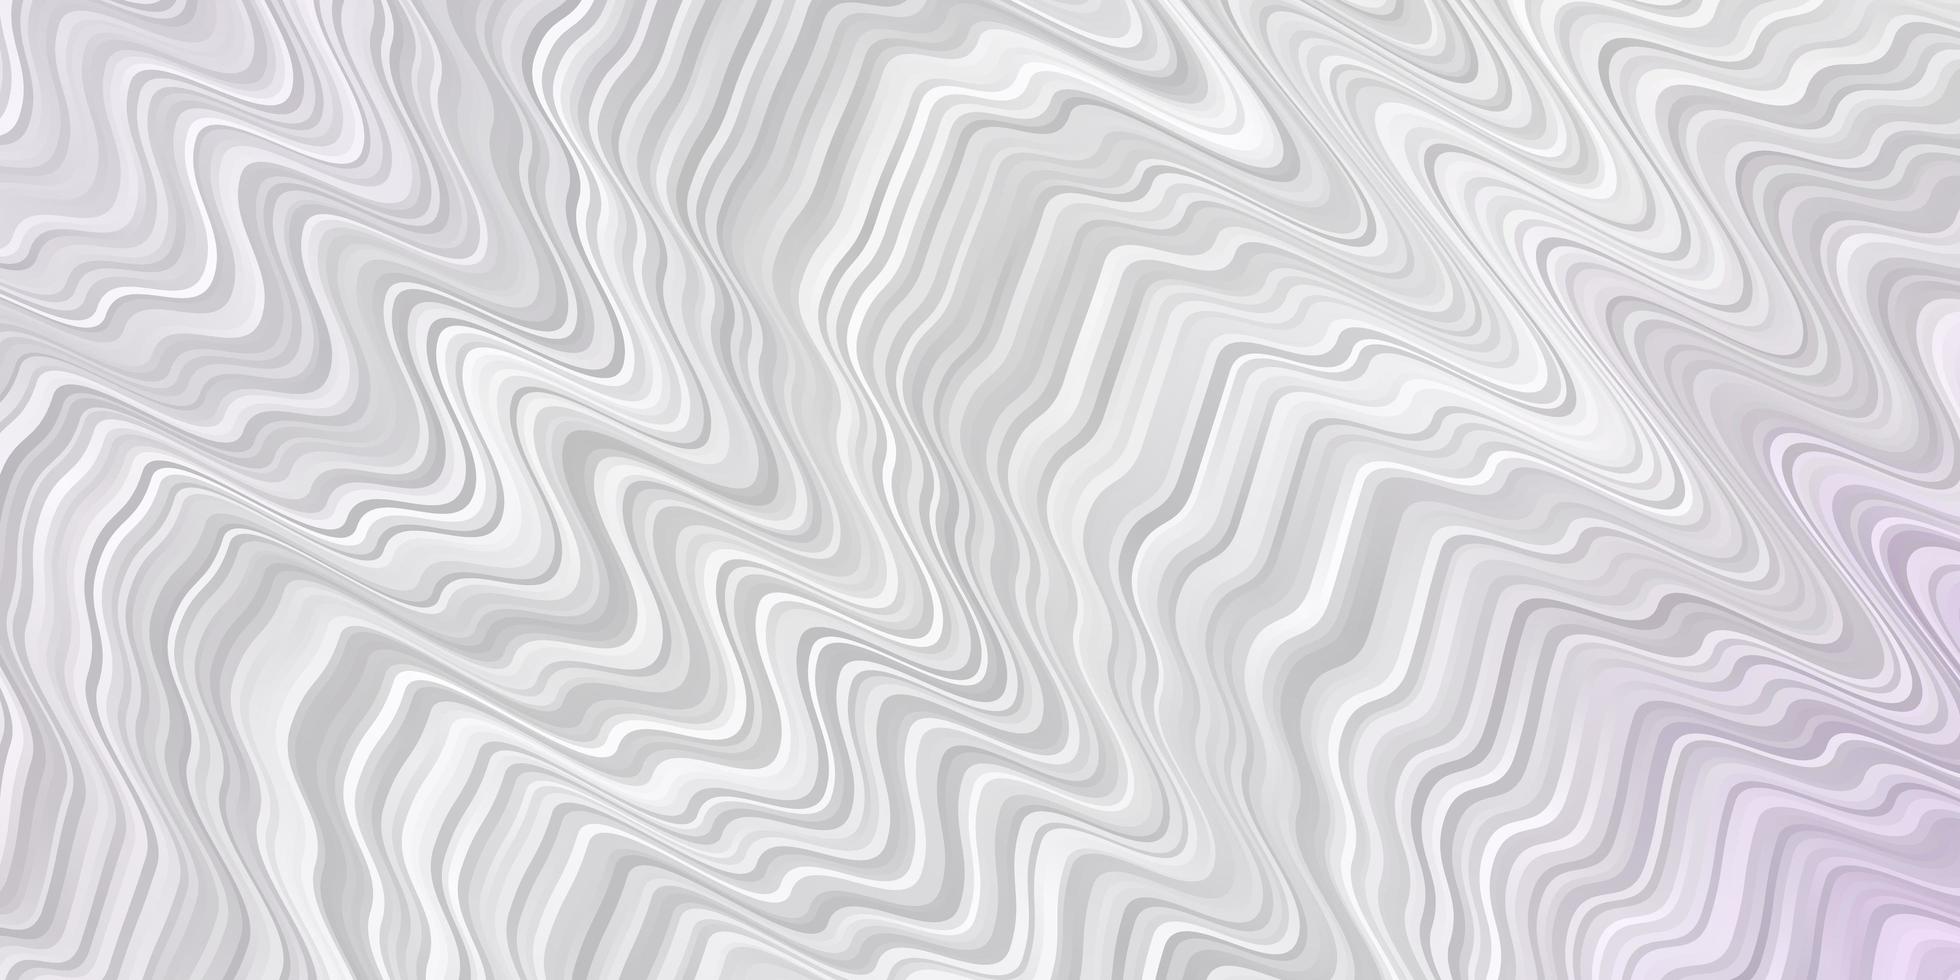 Hellviolettes Vektorlayout mit kreisbogenförmigem hellem Muster mit bunten gebogenen Linien formt das beste Design für Ihr Werbeplakatbanner vektor